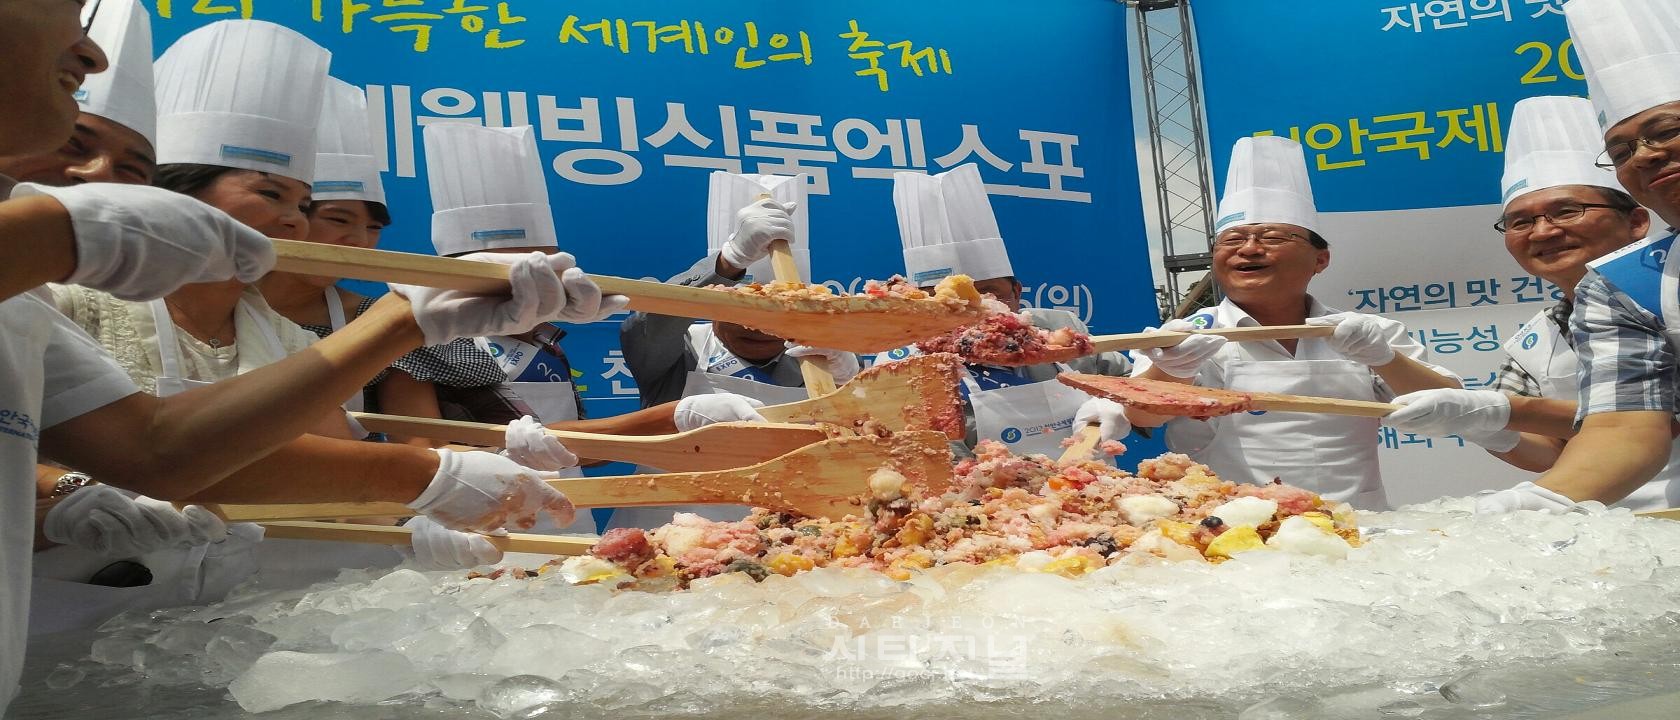 웰빙 서울 청계광장 호두팥빙수 퍼포먼스